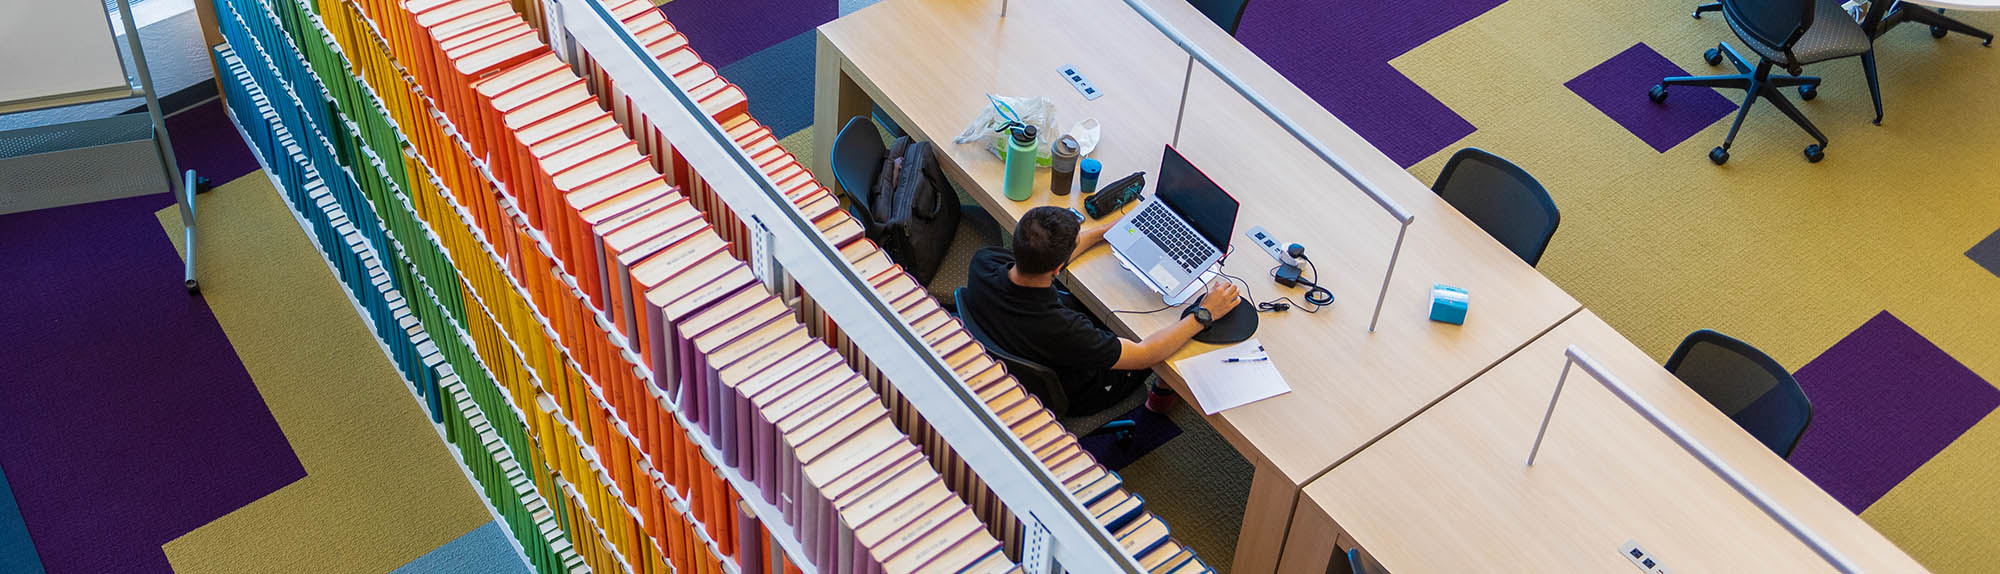 Une vue à vol d'oiseau d'une personne étudiant à la bibliothèque HSC avec une gamme colorée de livres derrière lui